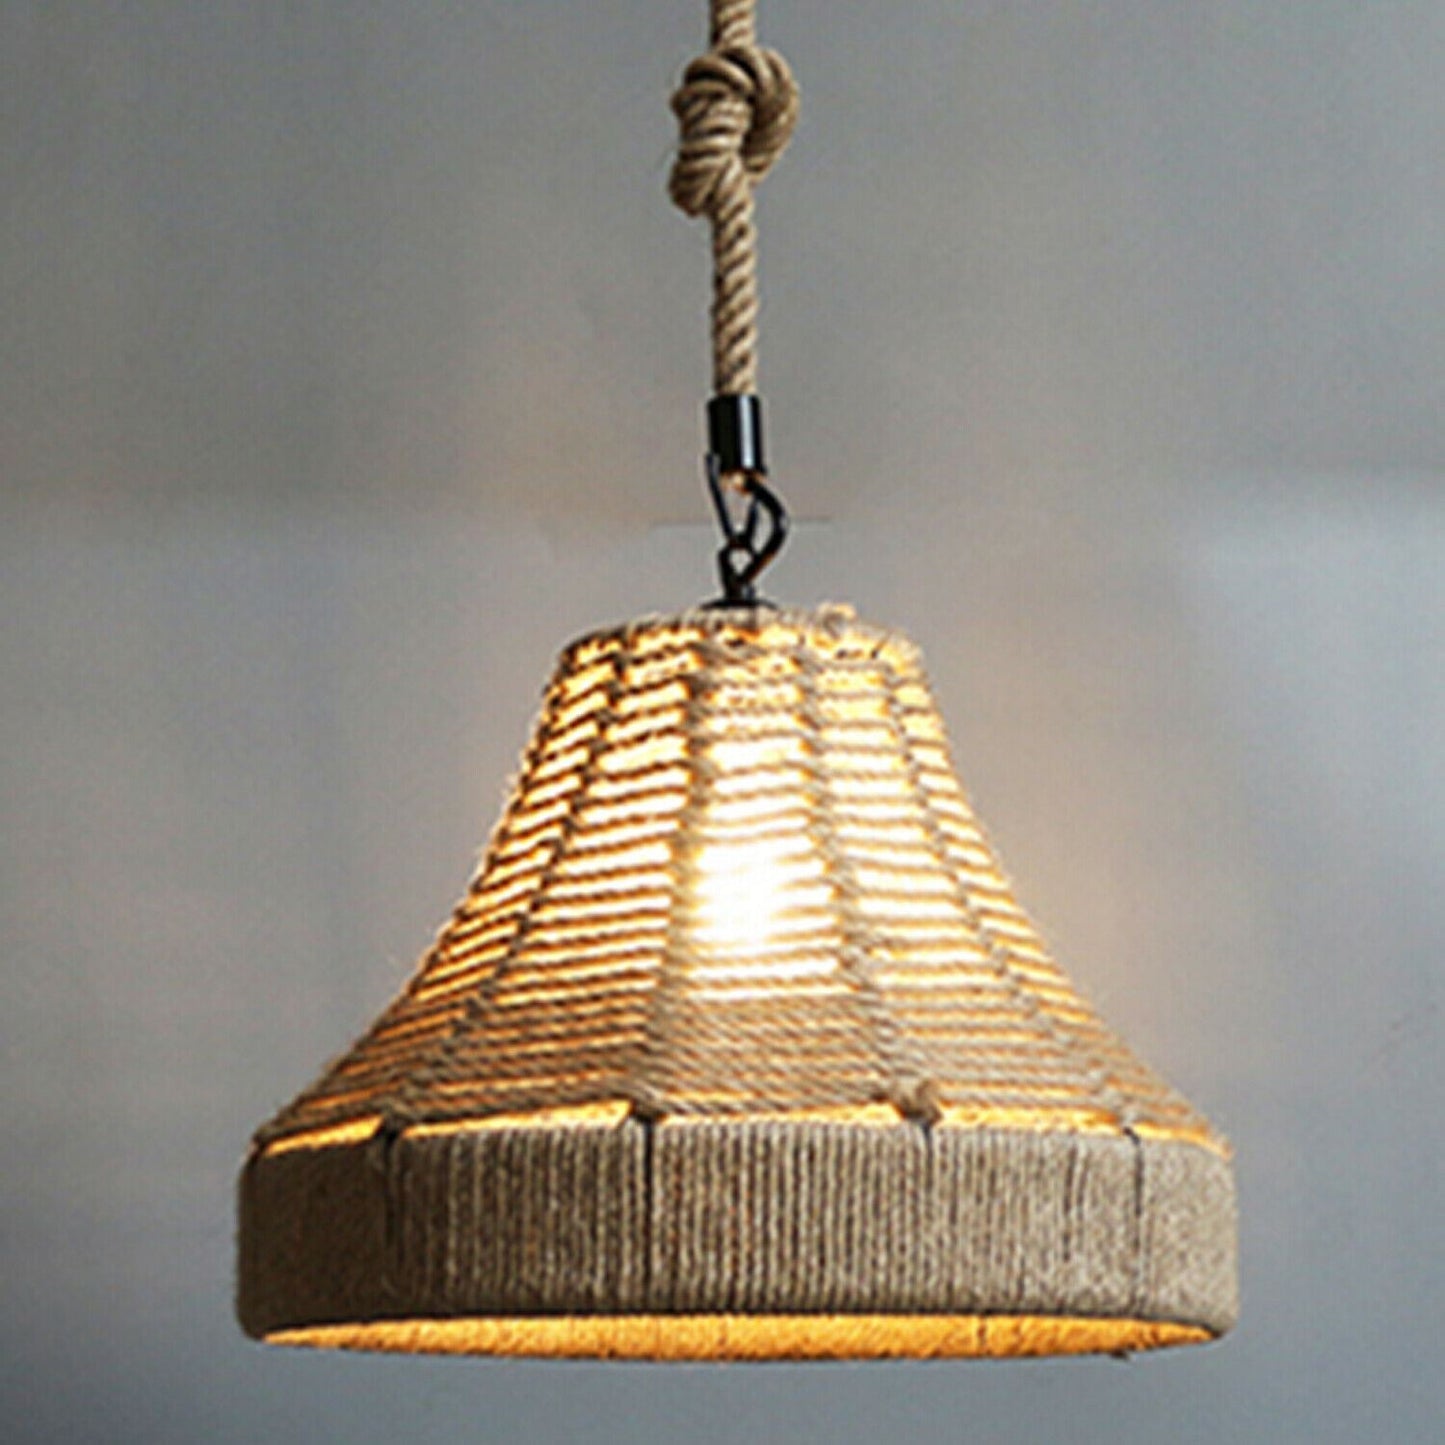 Retro Industrial Vintage Loft Hanfseil Pendelleuchte Deckenlampe